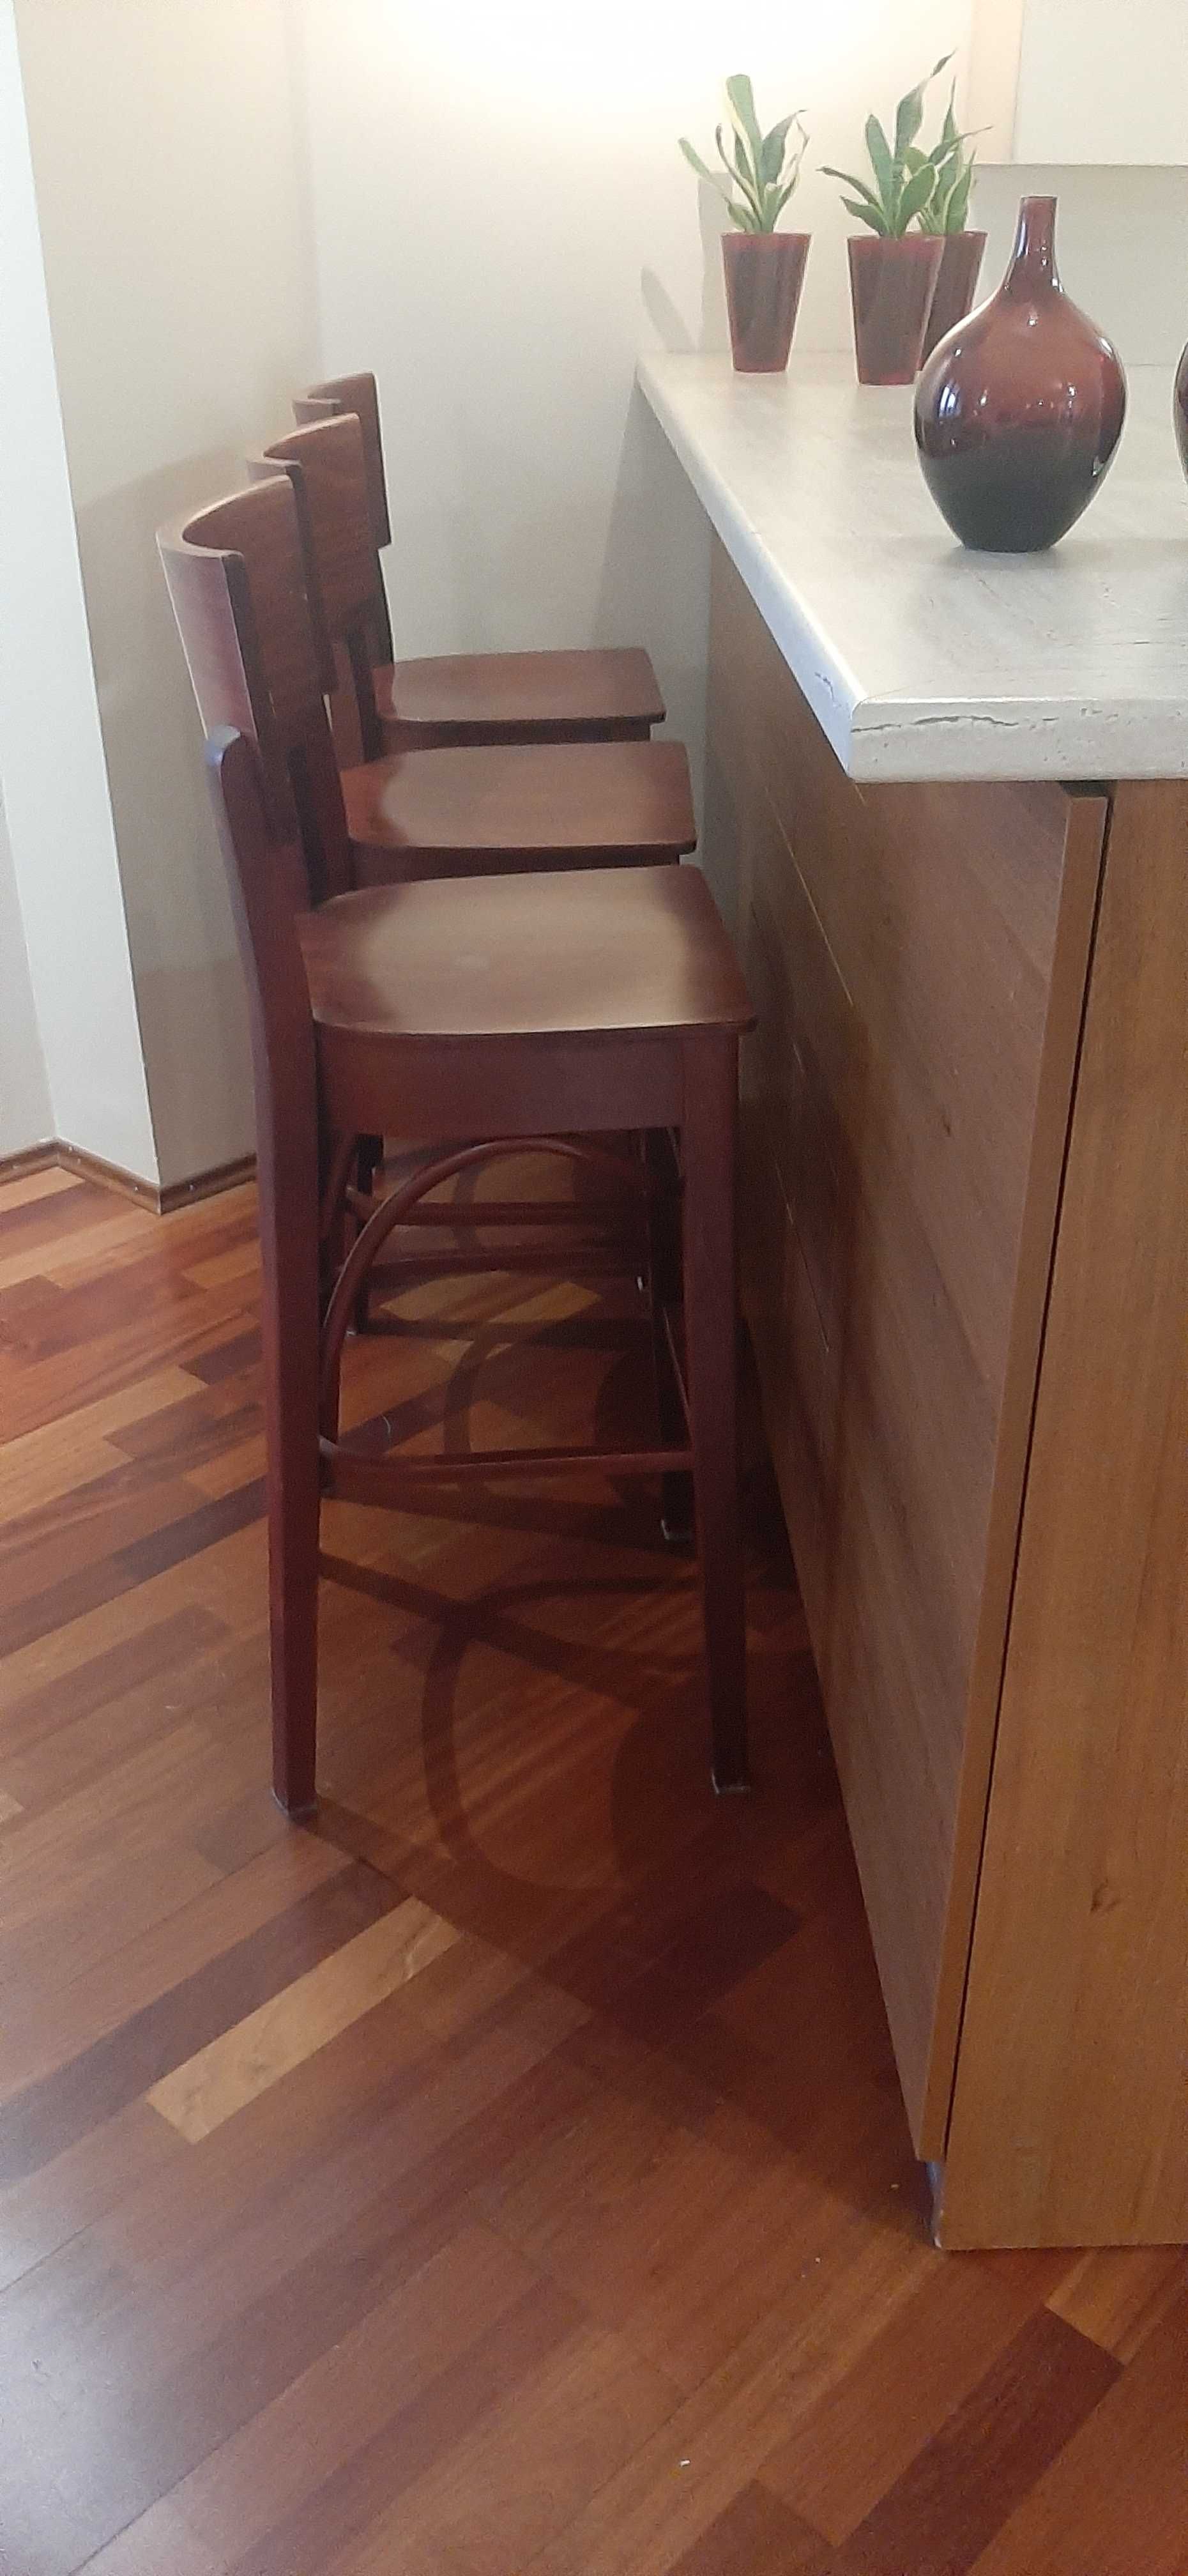 Sprzedam 3 krzesła "barowe" drewniane